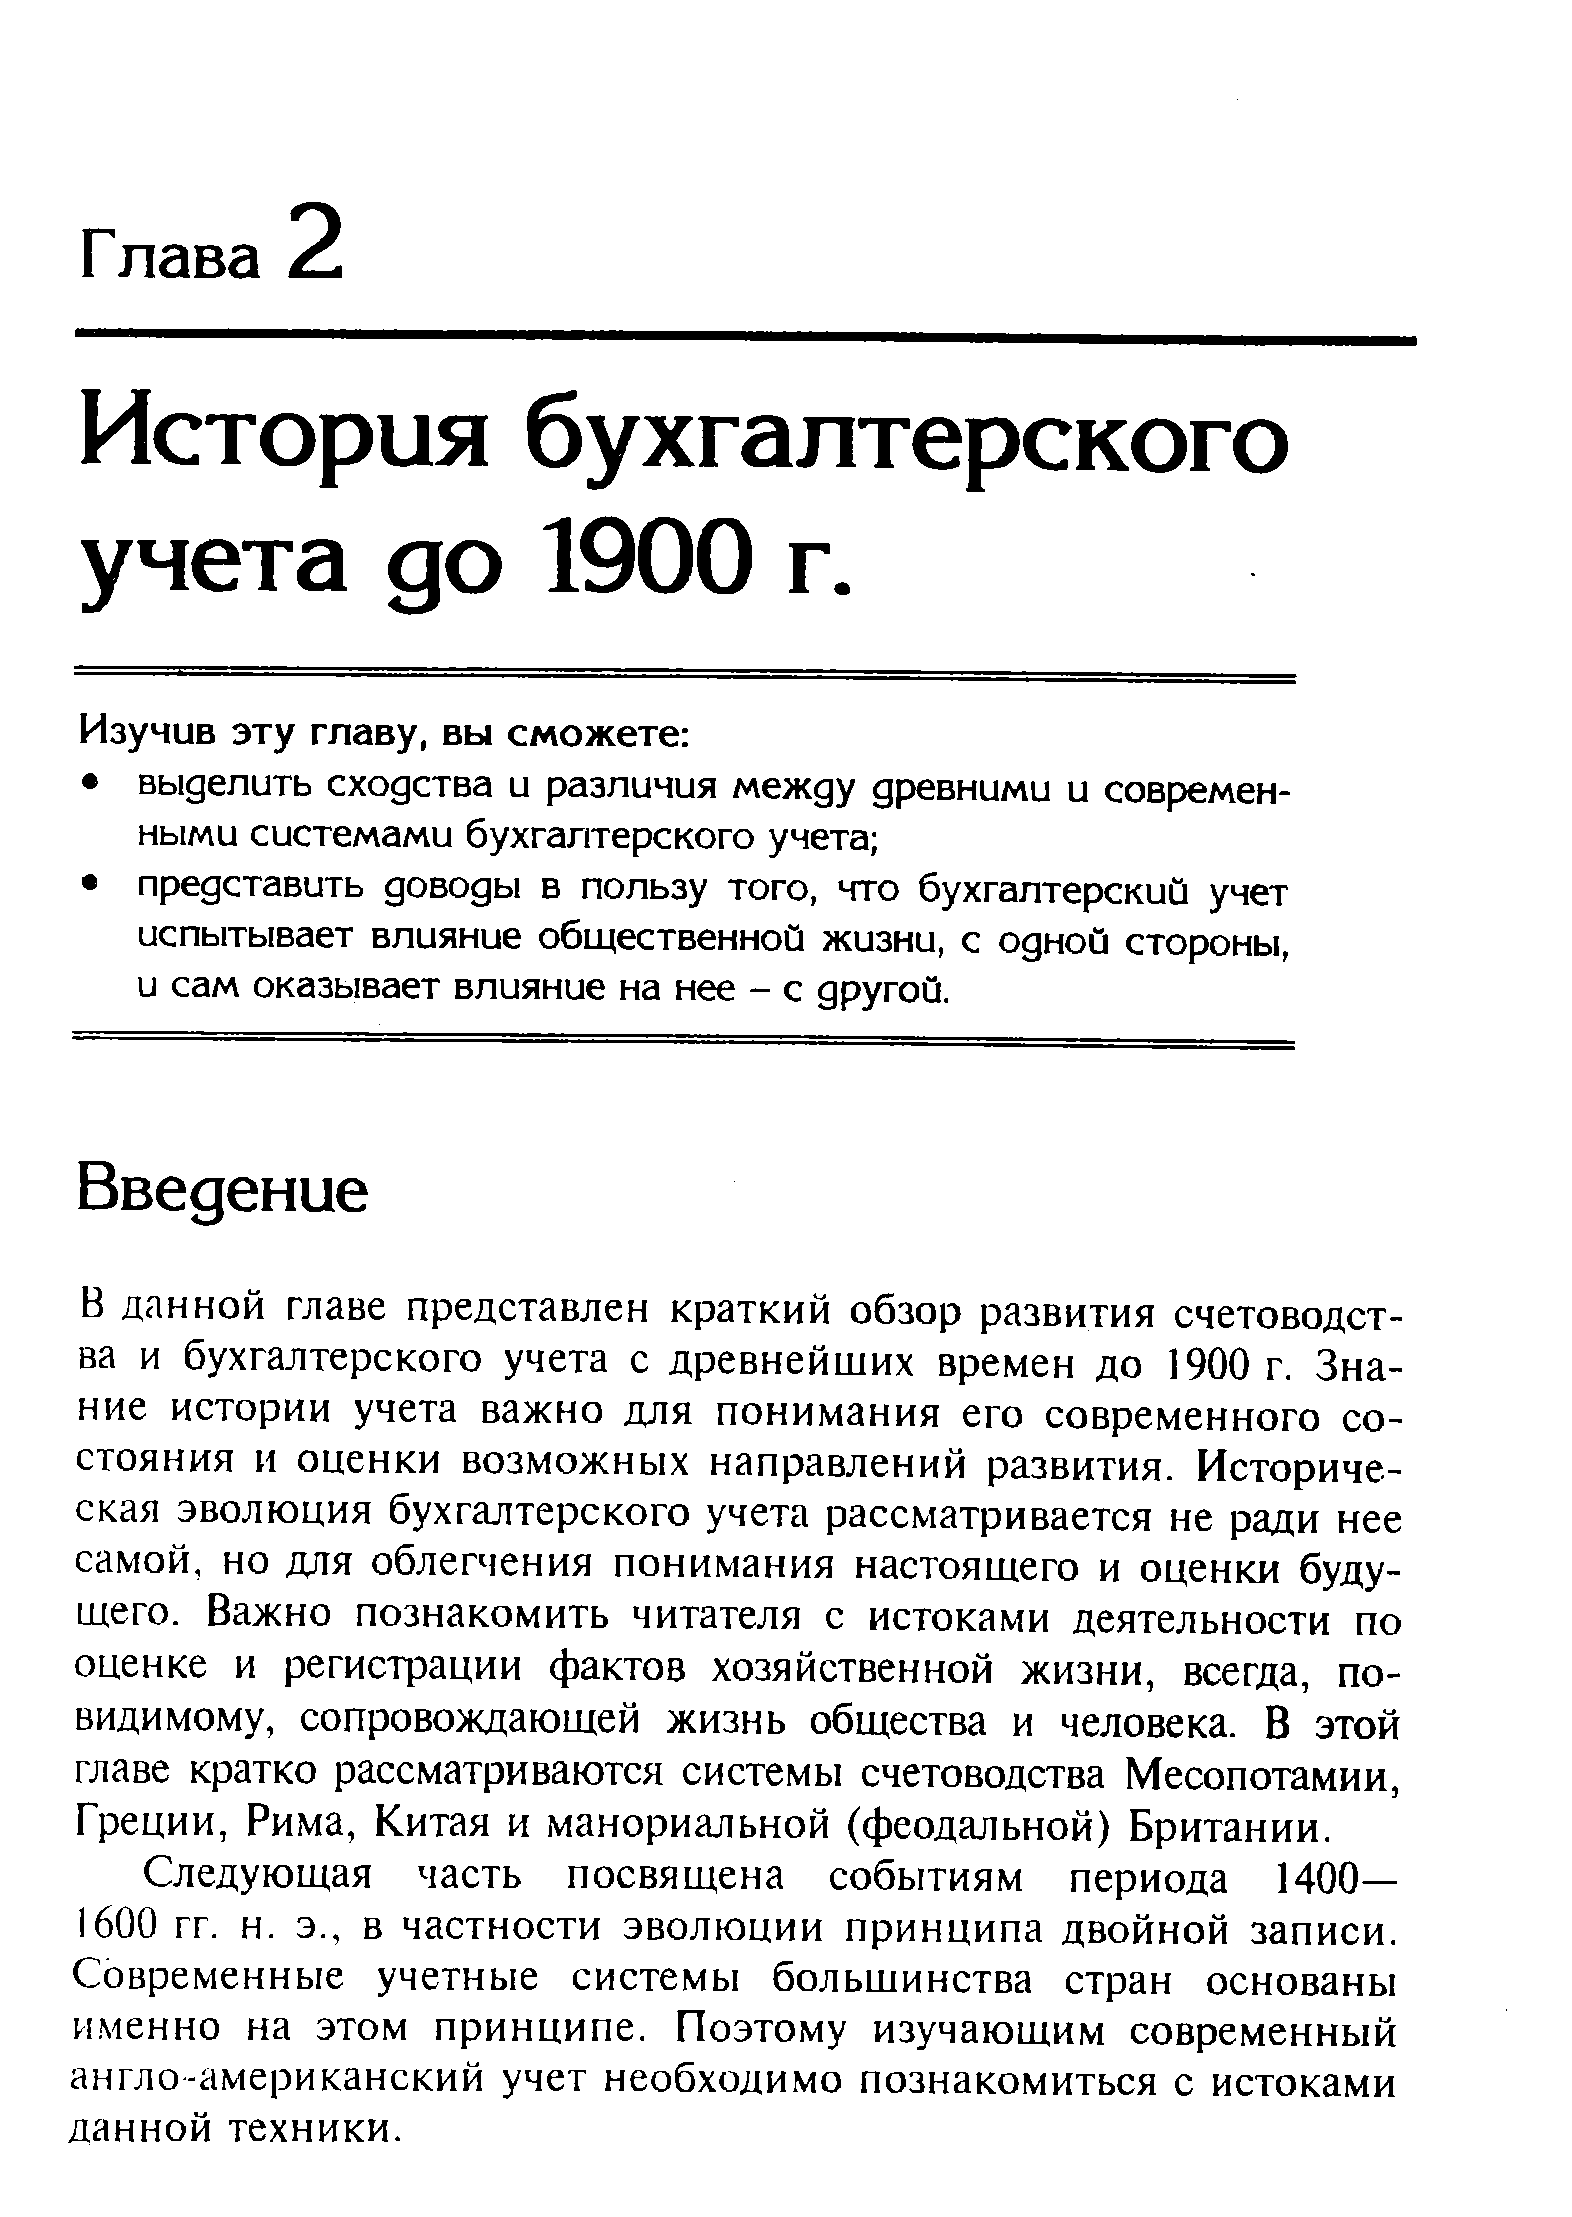 История бухгалтерского учета до 1900 г.
